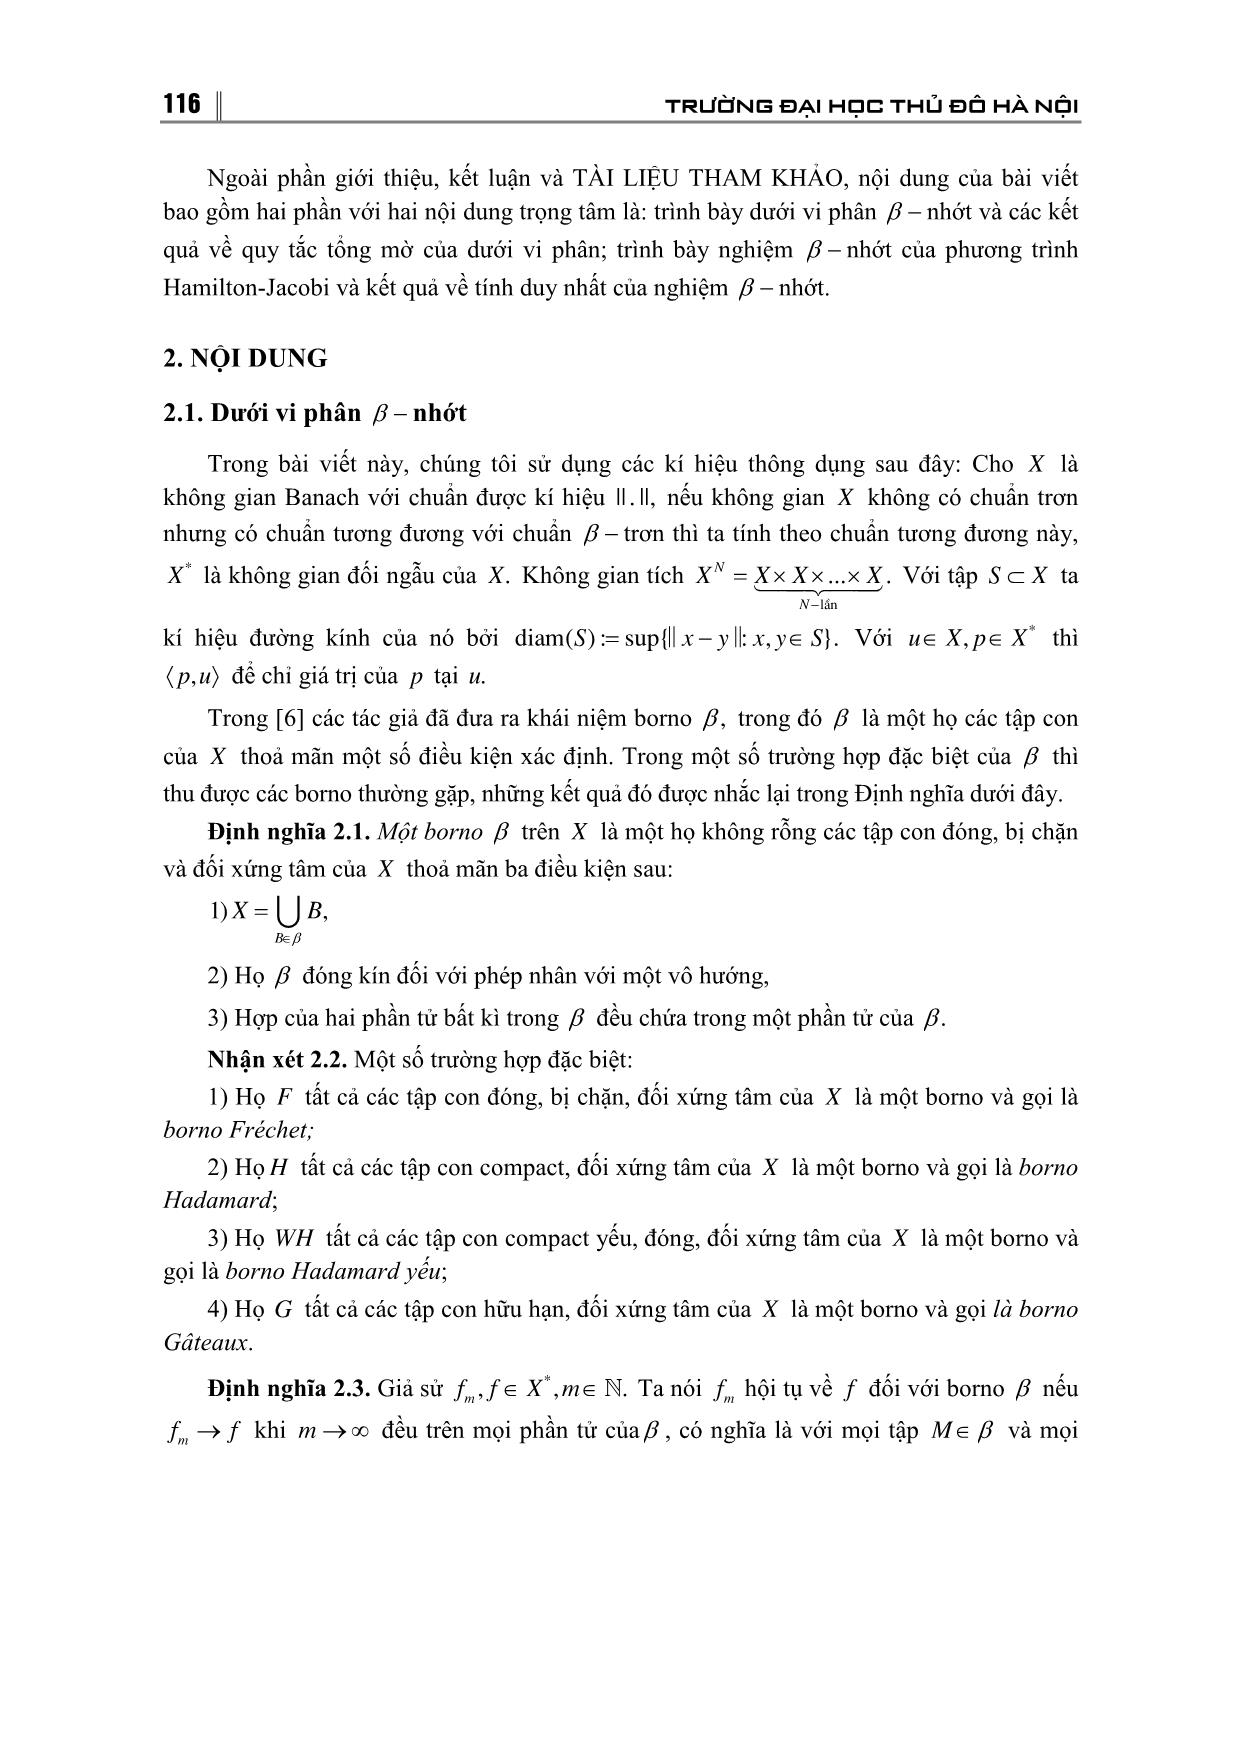 Tính duy nhất nghiệm của β - Nhớt của phương trình Hamilton-Jacobi trong không gian Banach trang 2